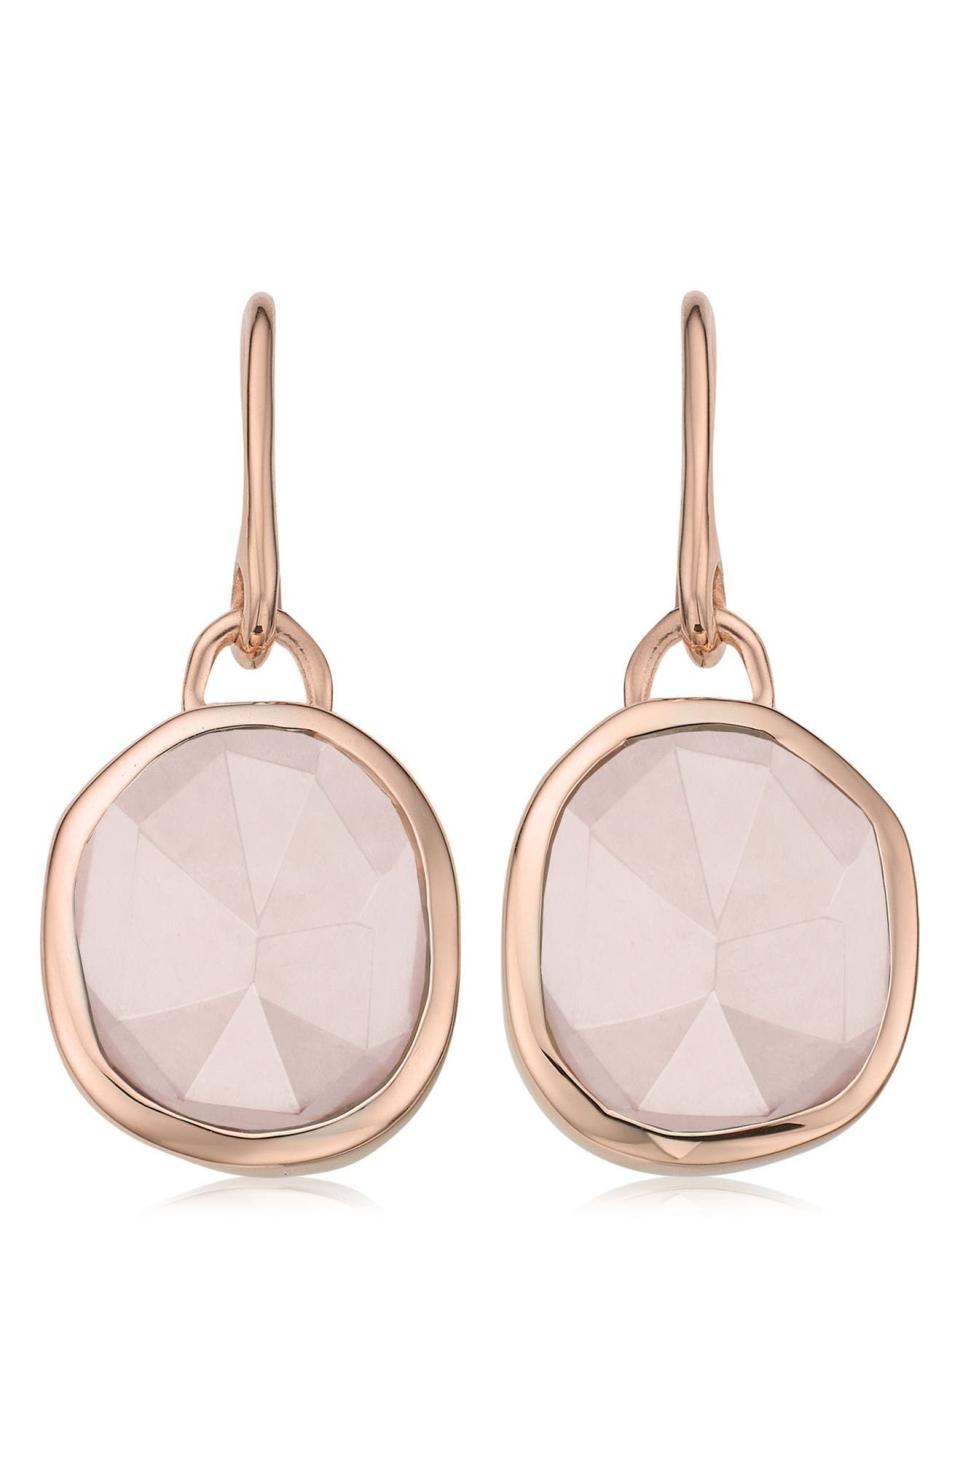 15) Siren Semiprecious Stone Drop Earrings